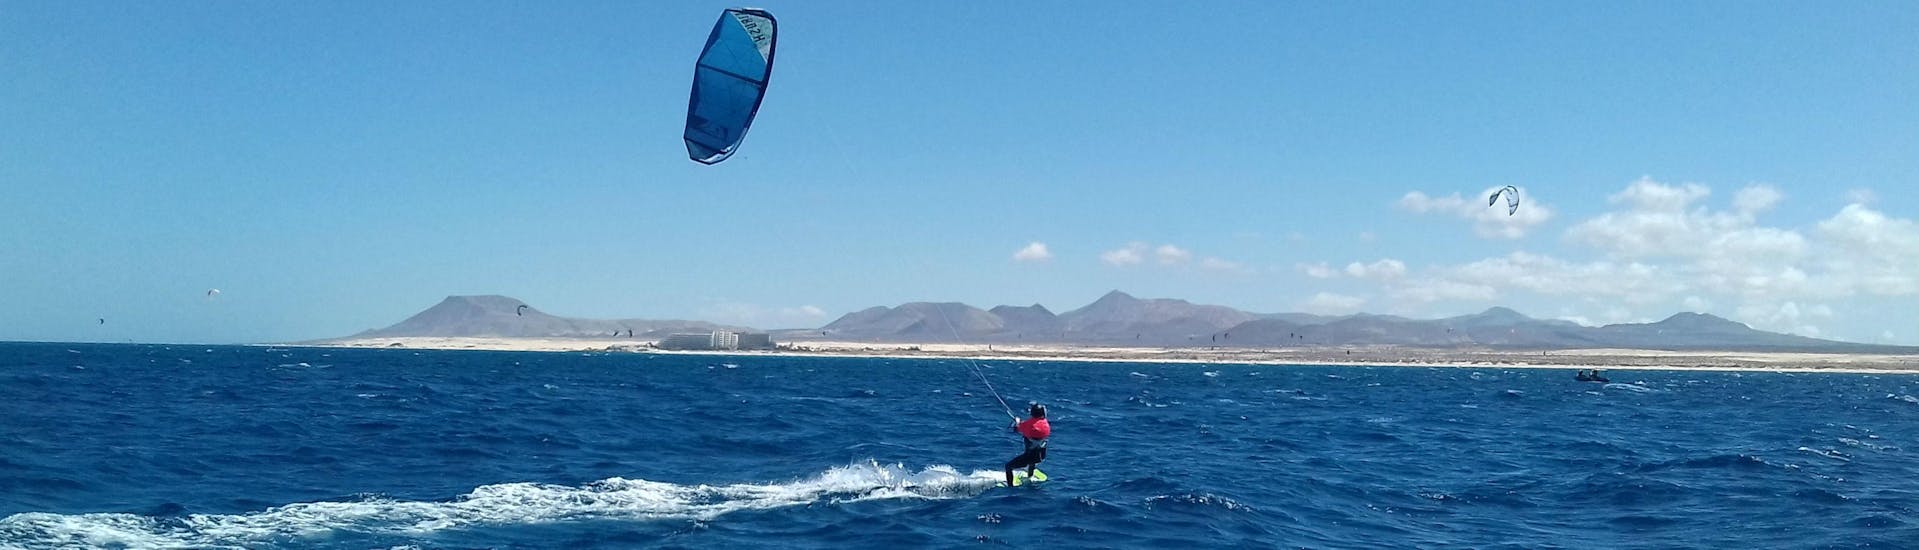 kitesurfing-lessons-for-advanced-corralejo-cbcm-fuerteventura-hero